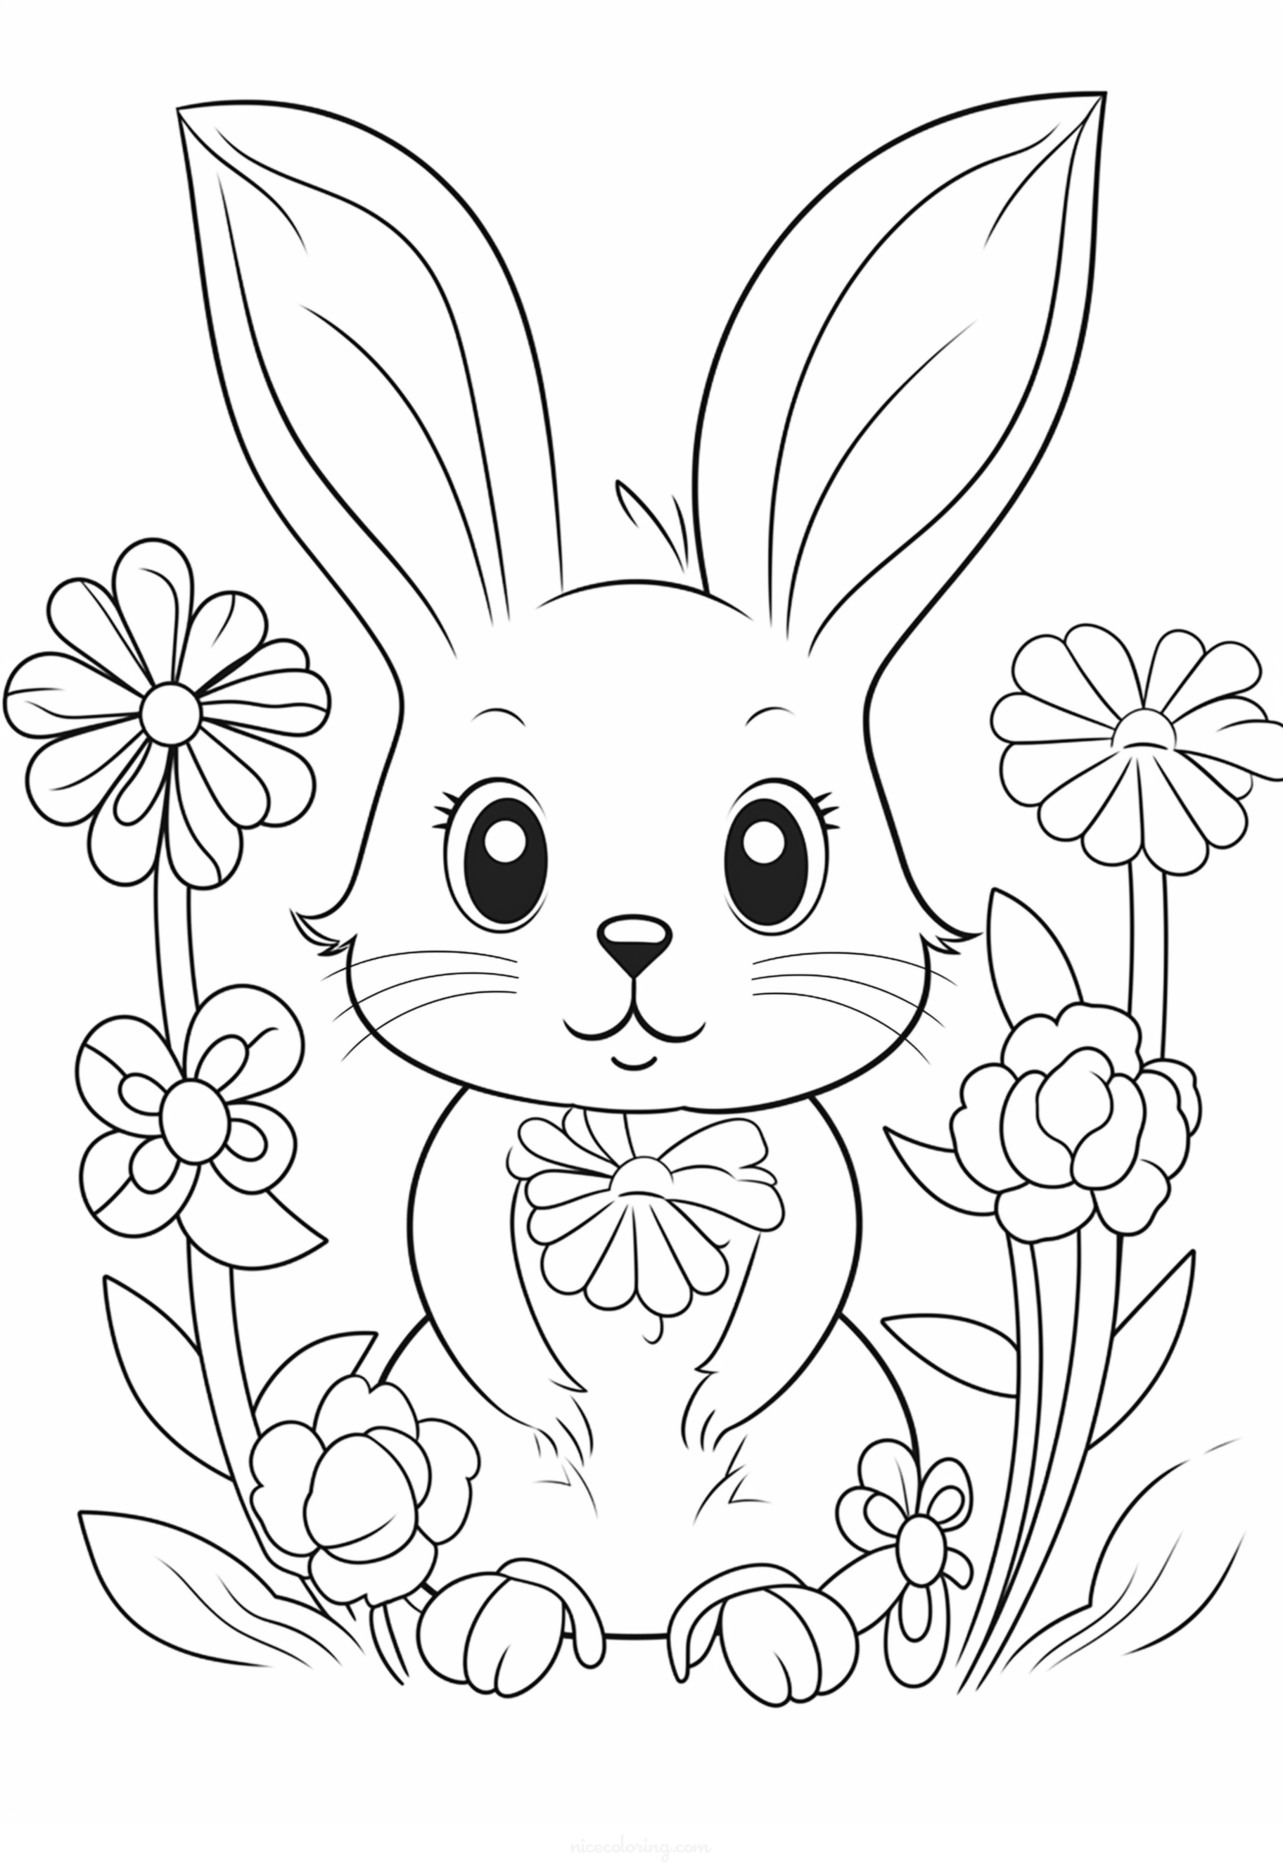 Tranh tô màu chú thỏ được bao quanh bởi hoa